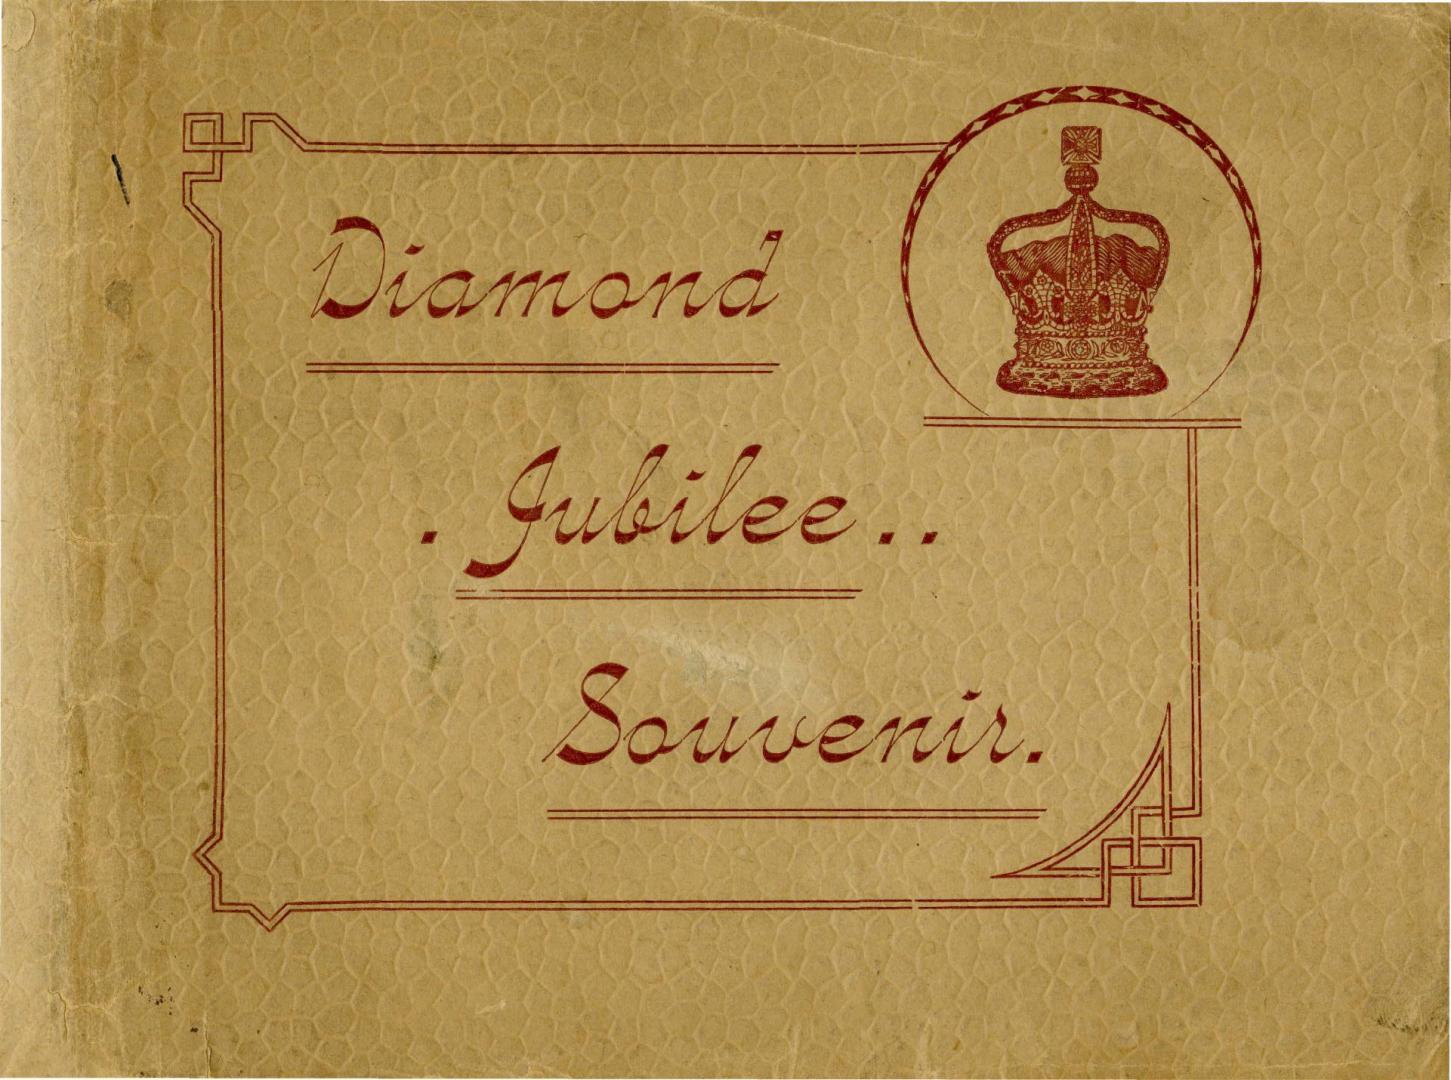 Diamond jubilee souvenir 1837-1897